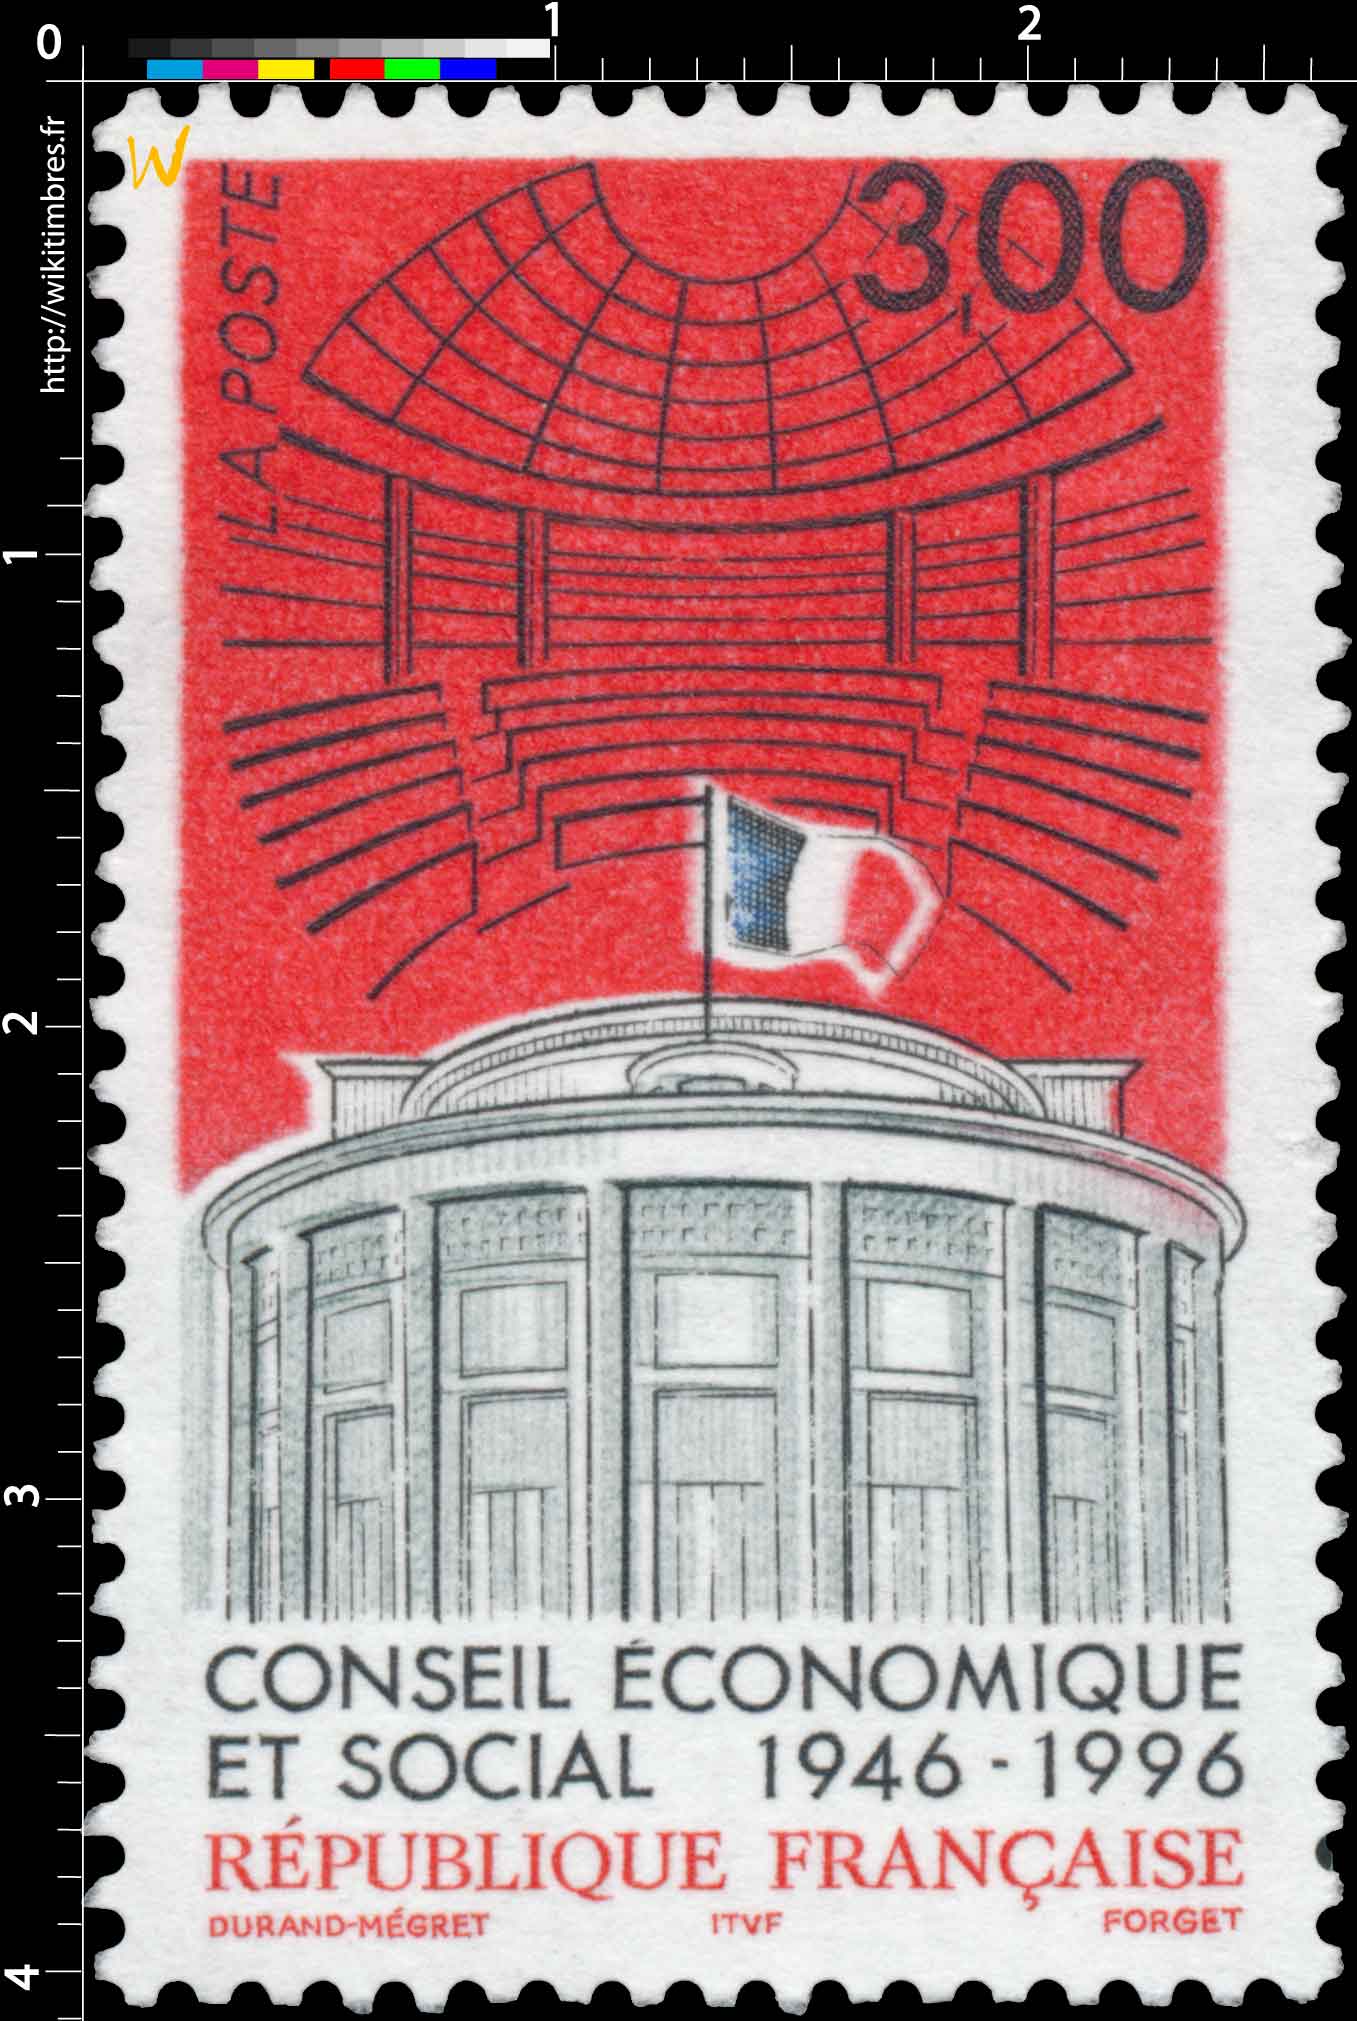 CONSEIL ÉCONOMIQUE ET SOCIAL 1946-1996